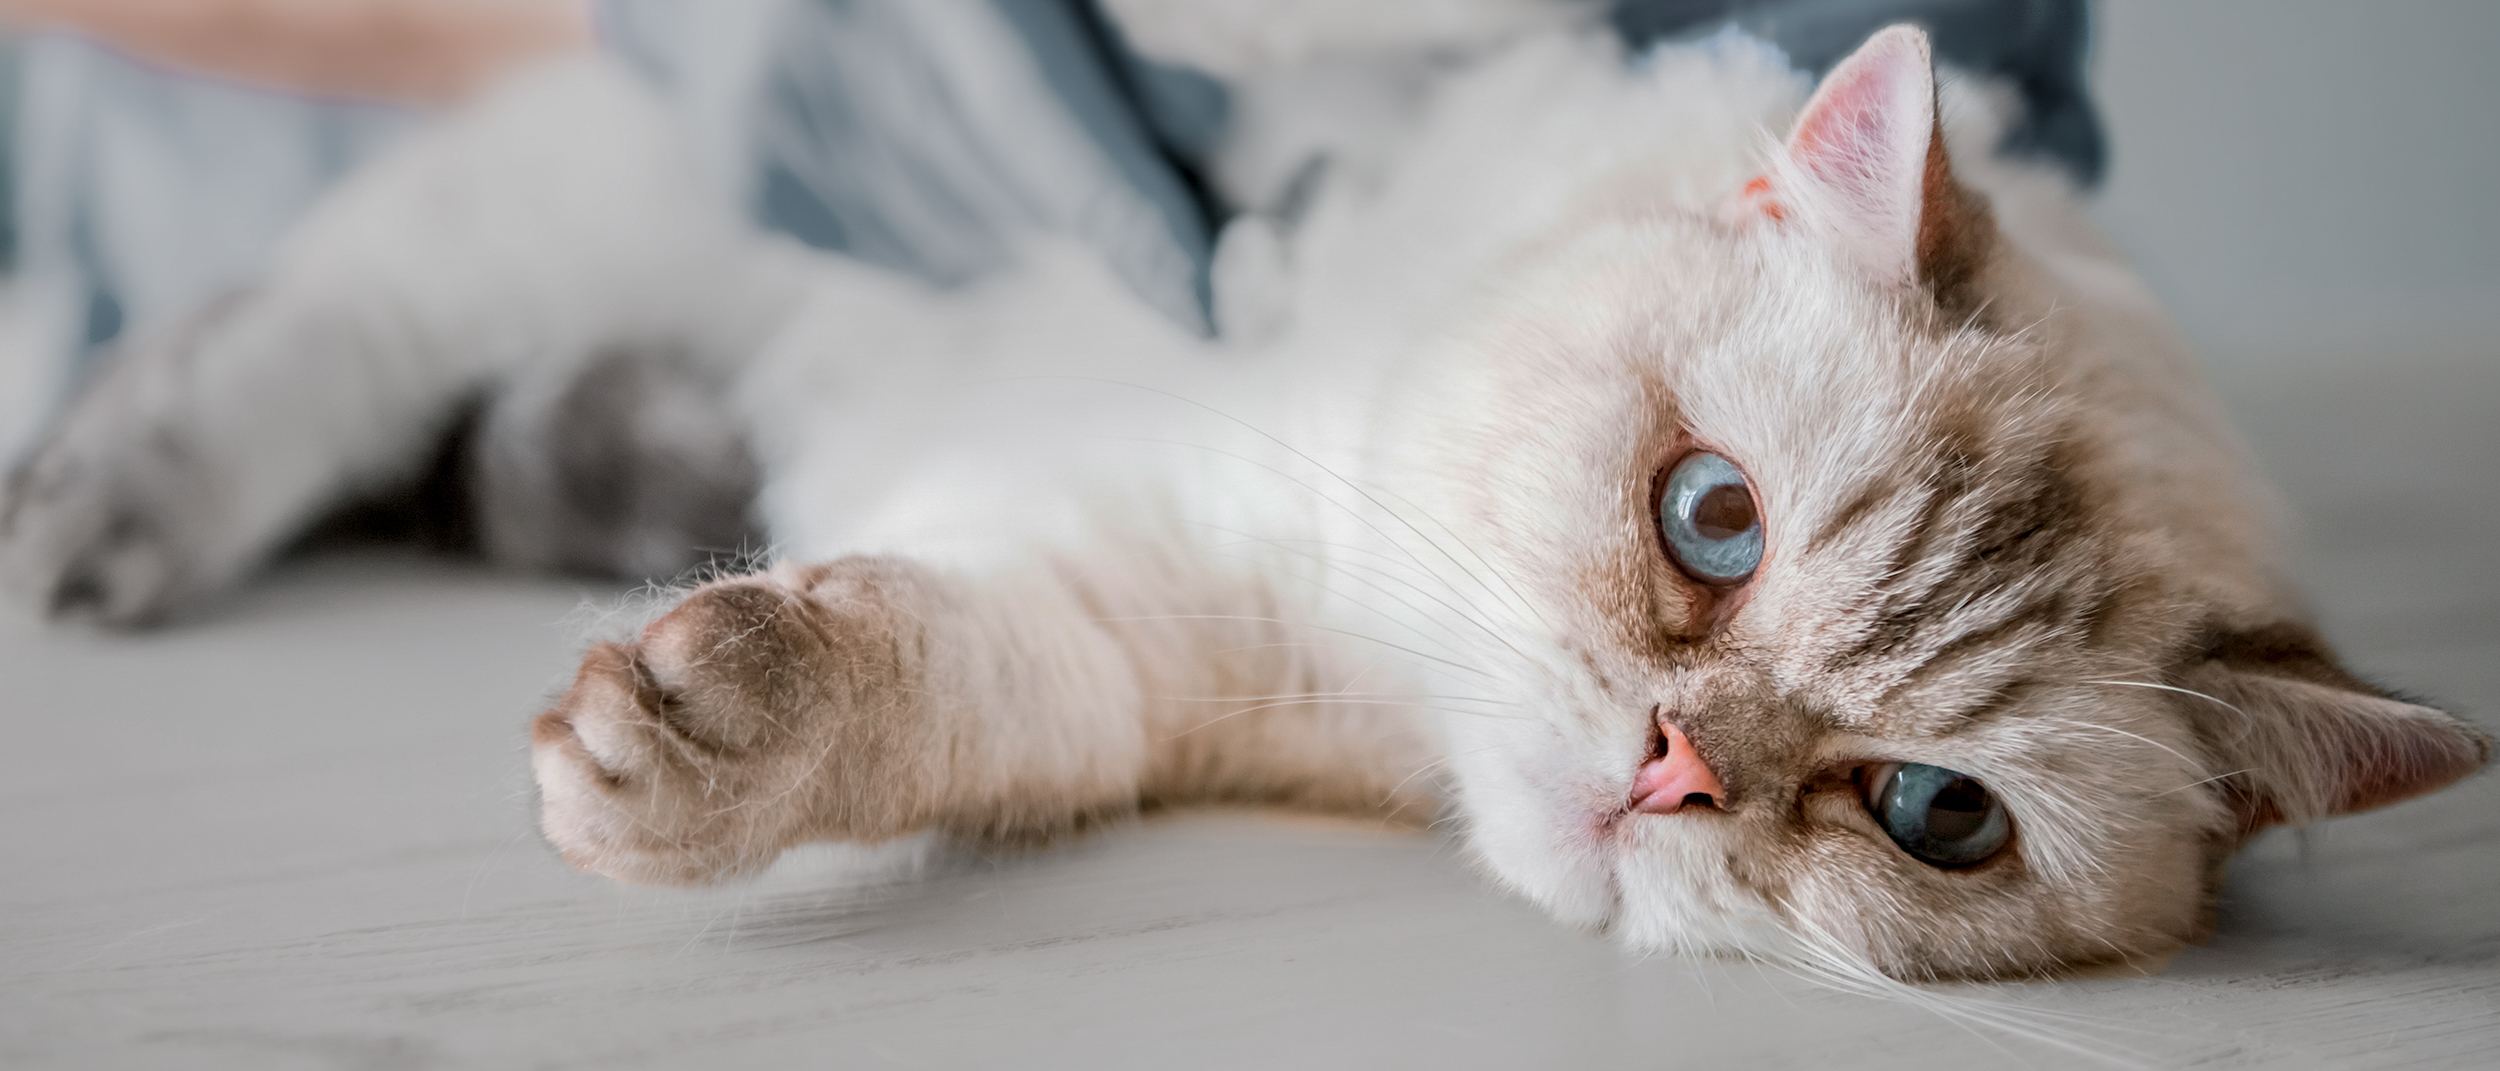 Стерилизация кошек: в каком возрасте делать, виды и осложнения | Royal  Canin UA